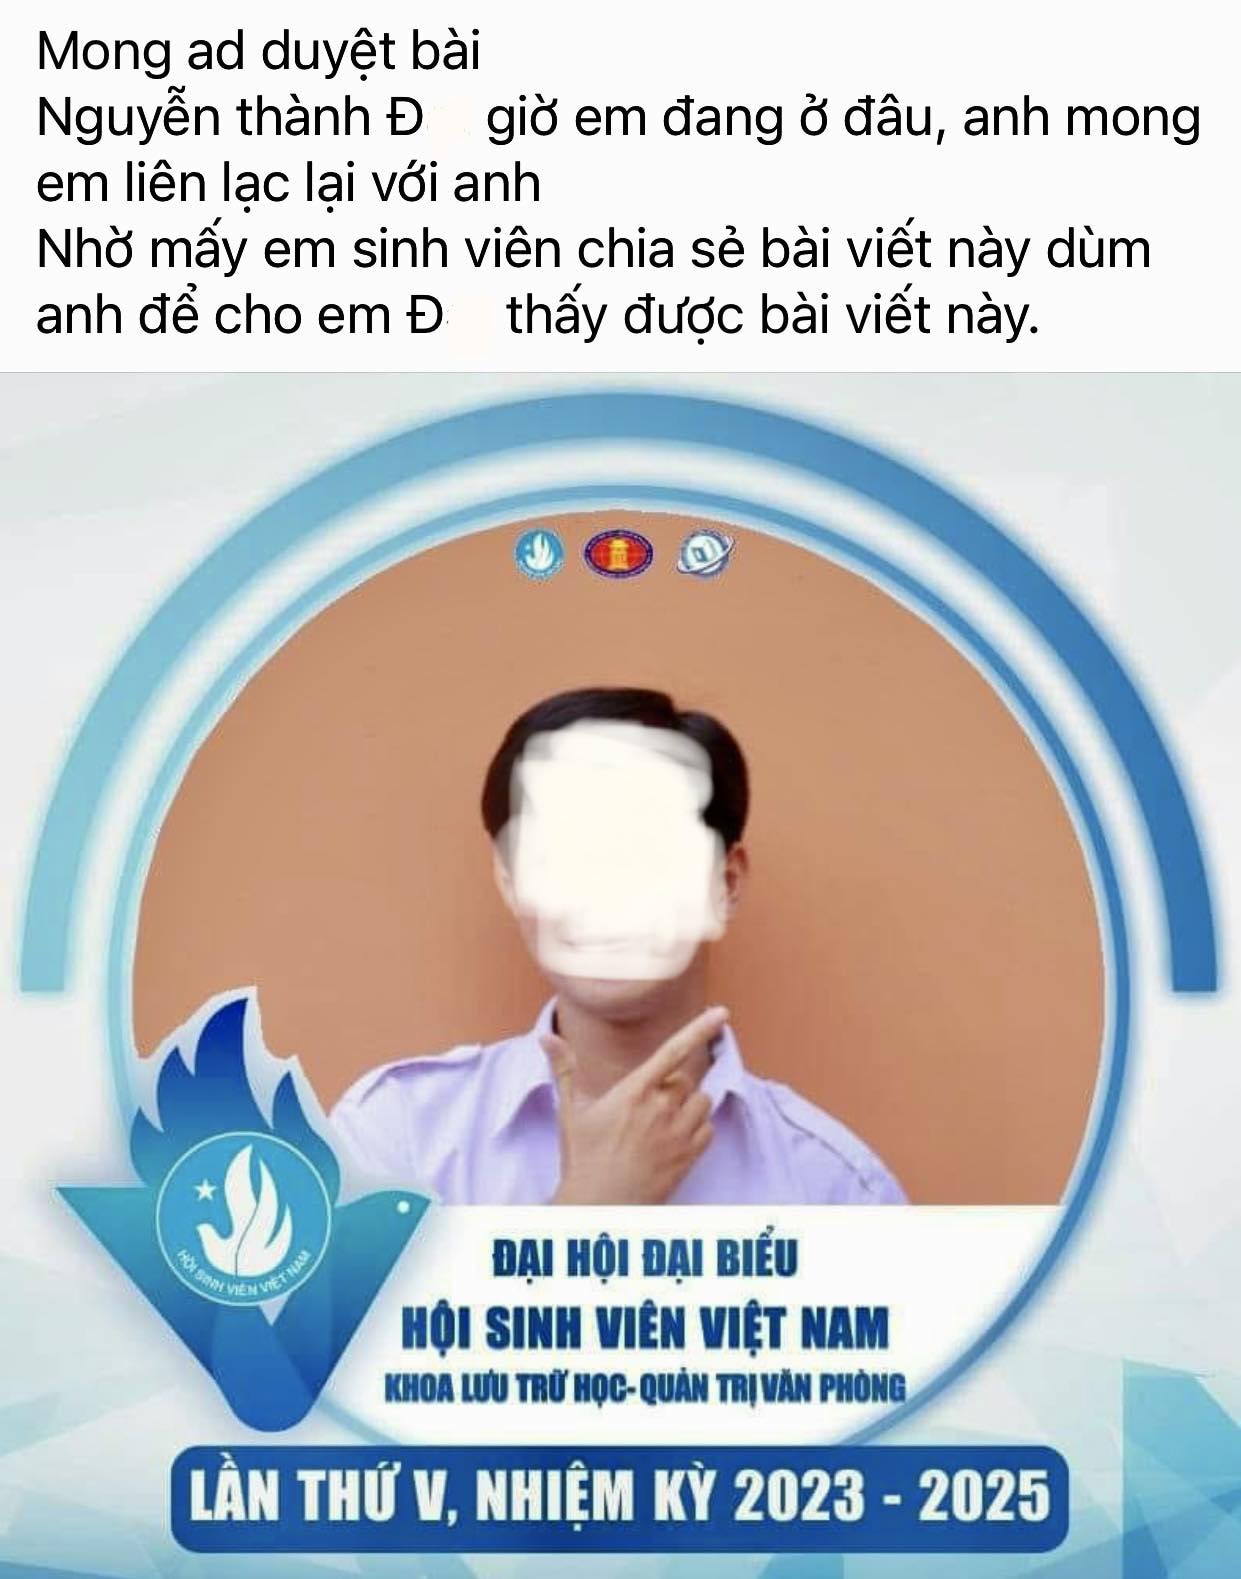 Información y fotografías publicadas en la página de estudiantes de residencia de la Universidad Nacional de Vietnam, en la ciudad de Ho Chi Minh, esta mañana, 28 de abril: captura de pantalla